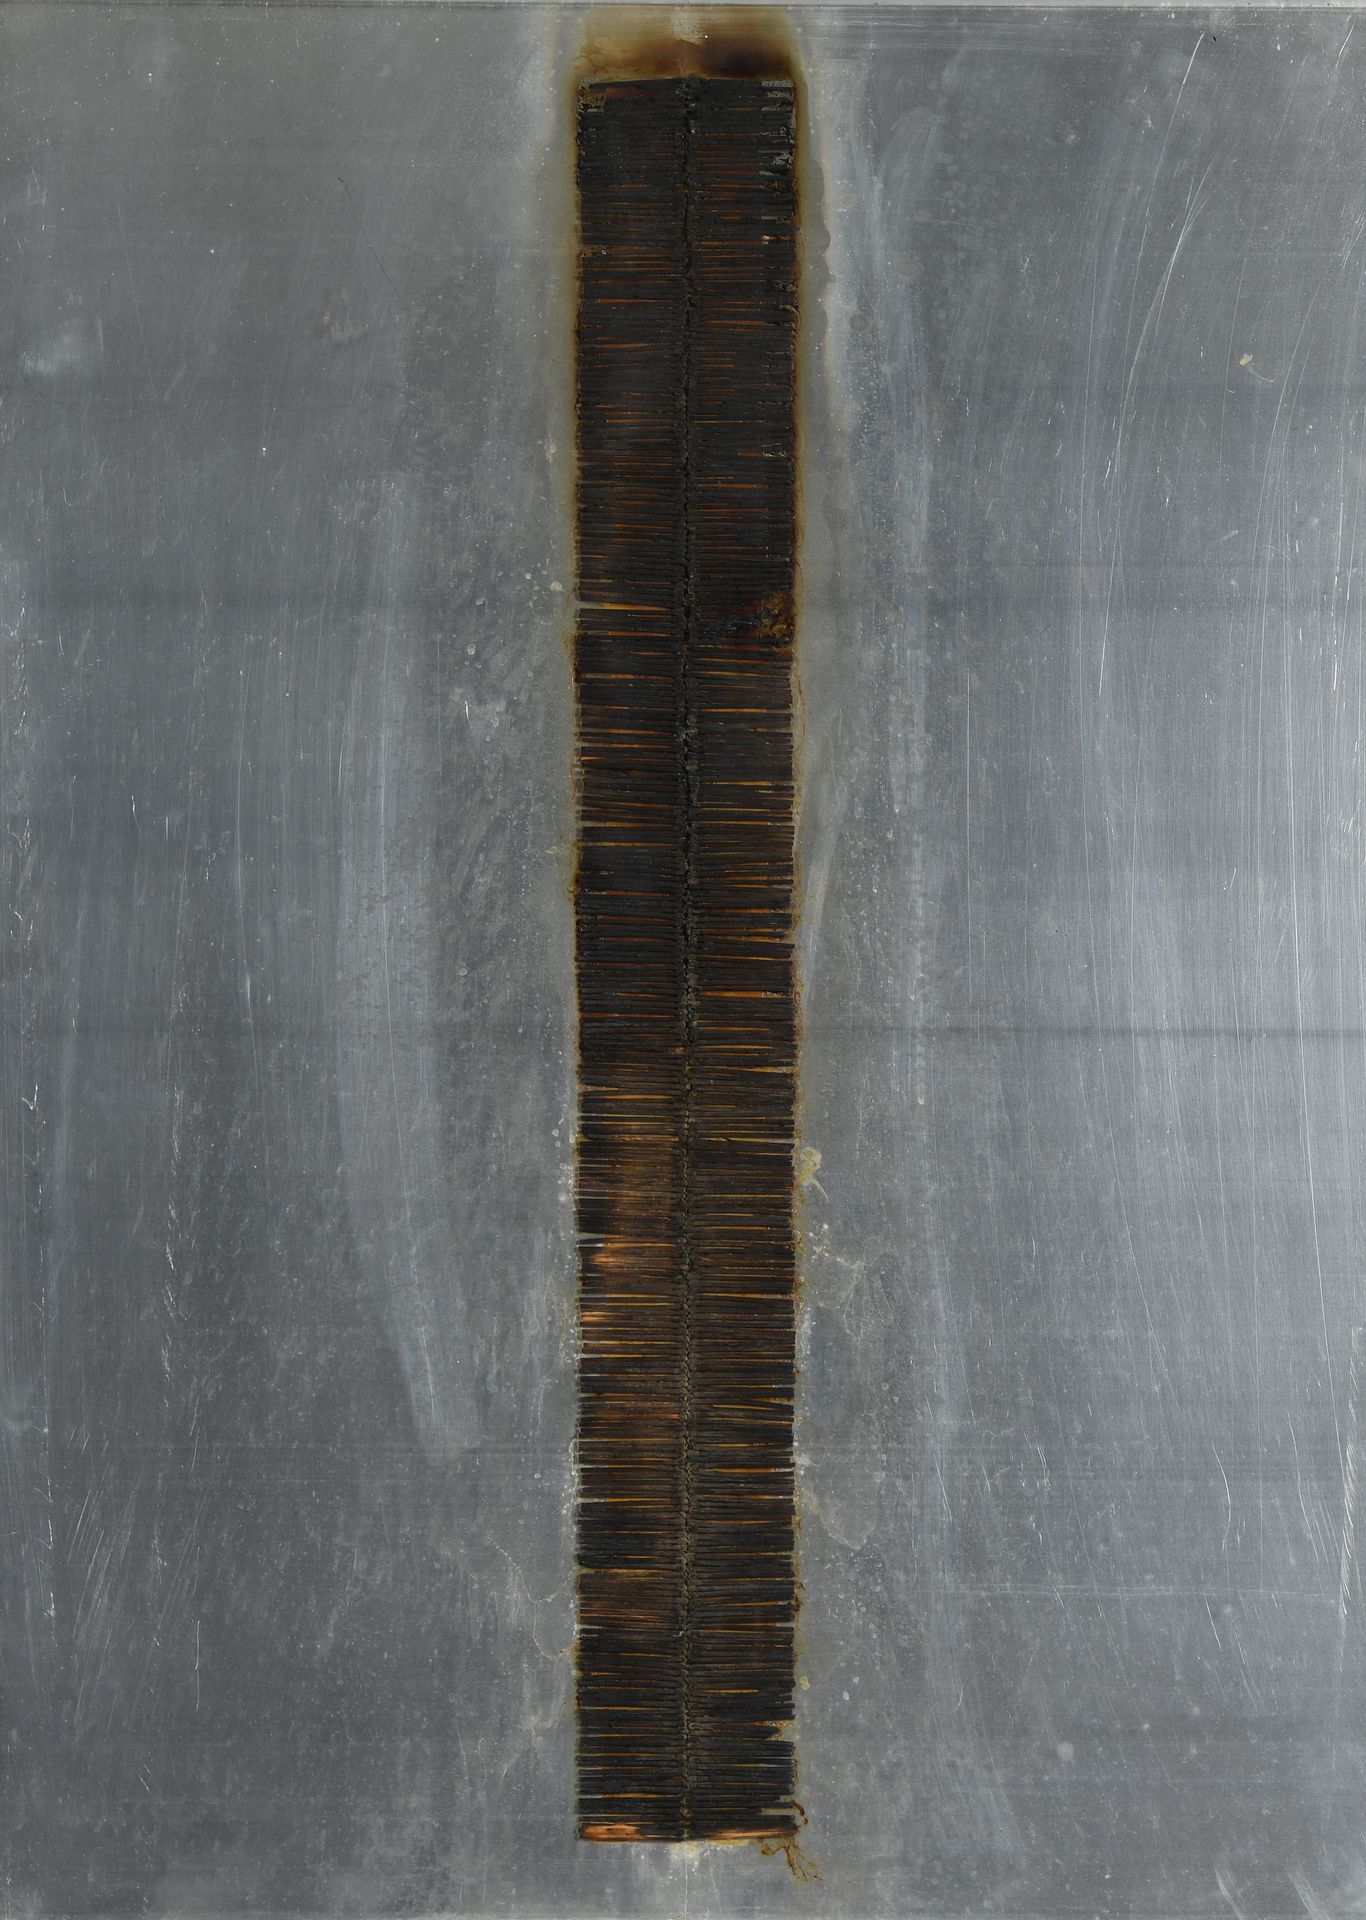 Null 伯纳德-奥贝尔坦（1934-2015）
火的图画
铝板上的烧焦的火柴拼贴画，背面有签名。
89 x 65 cm (正在展出)